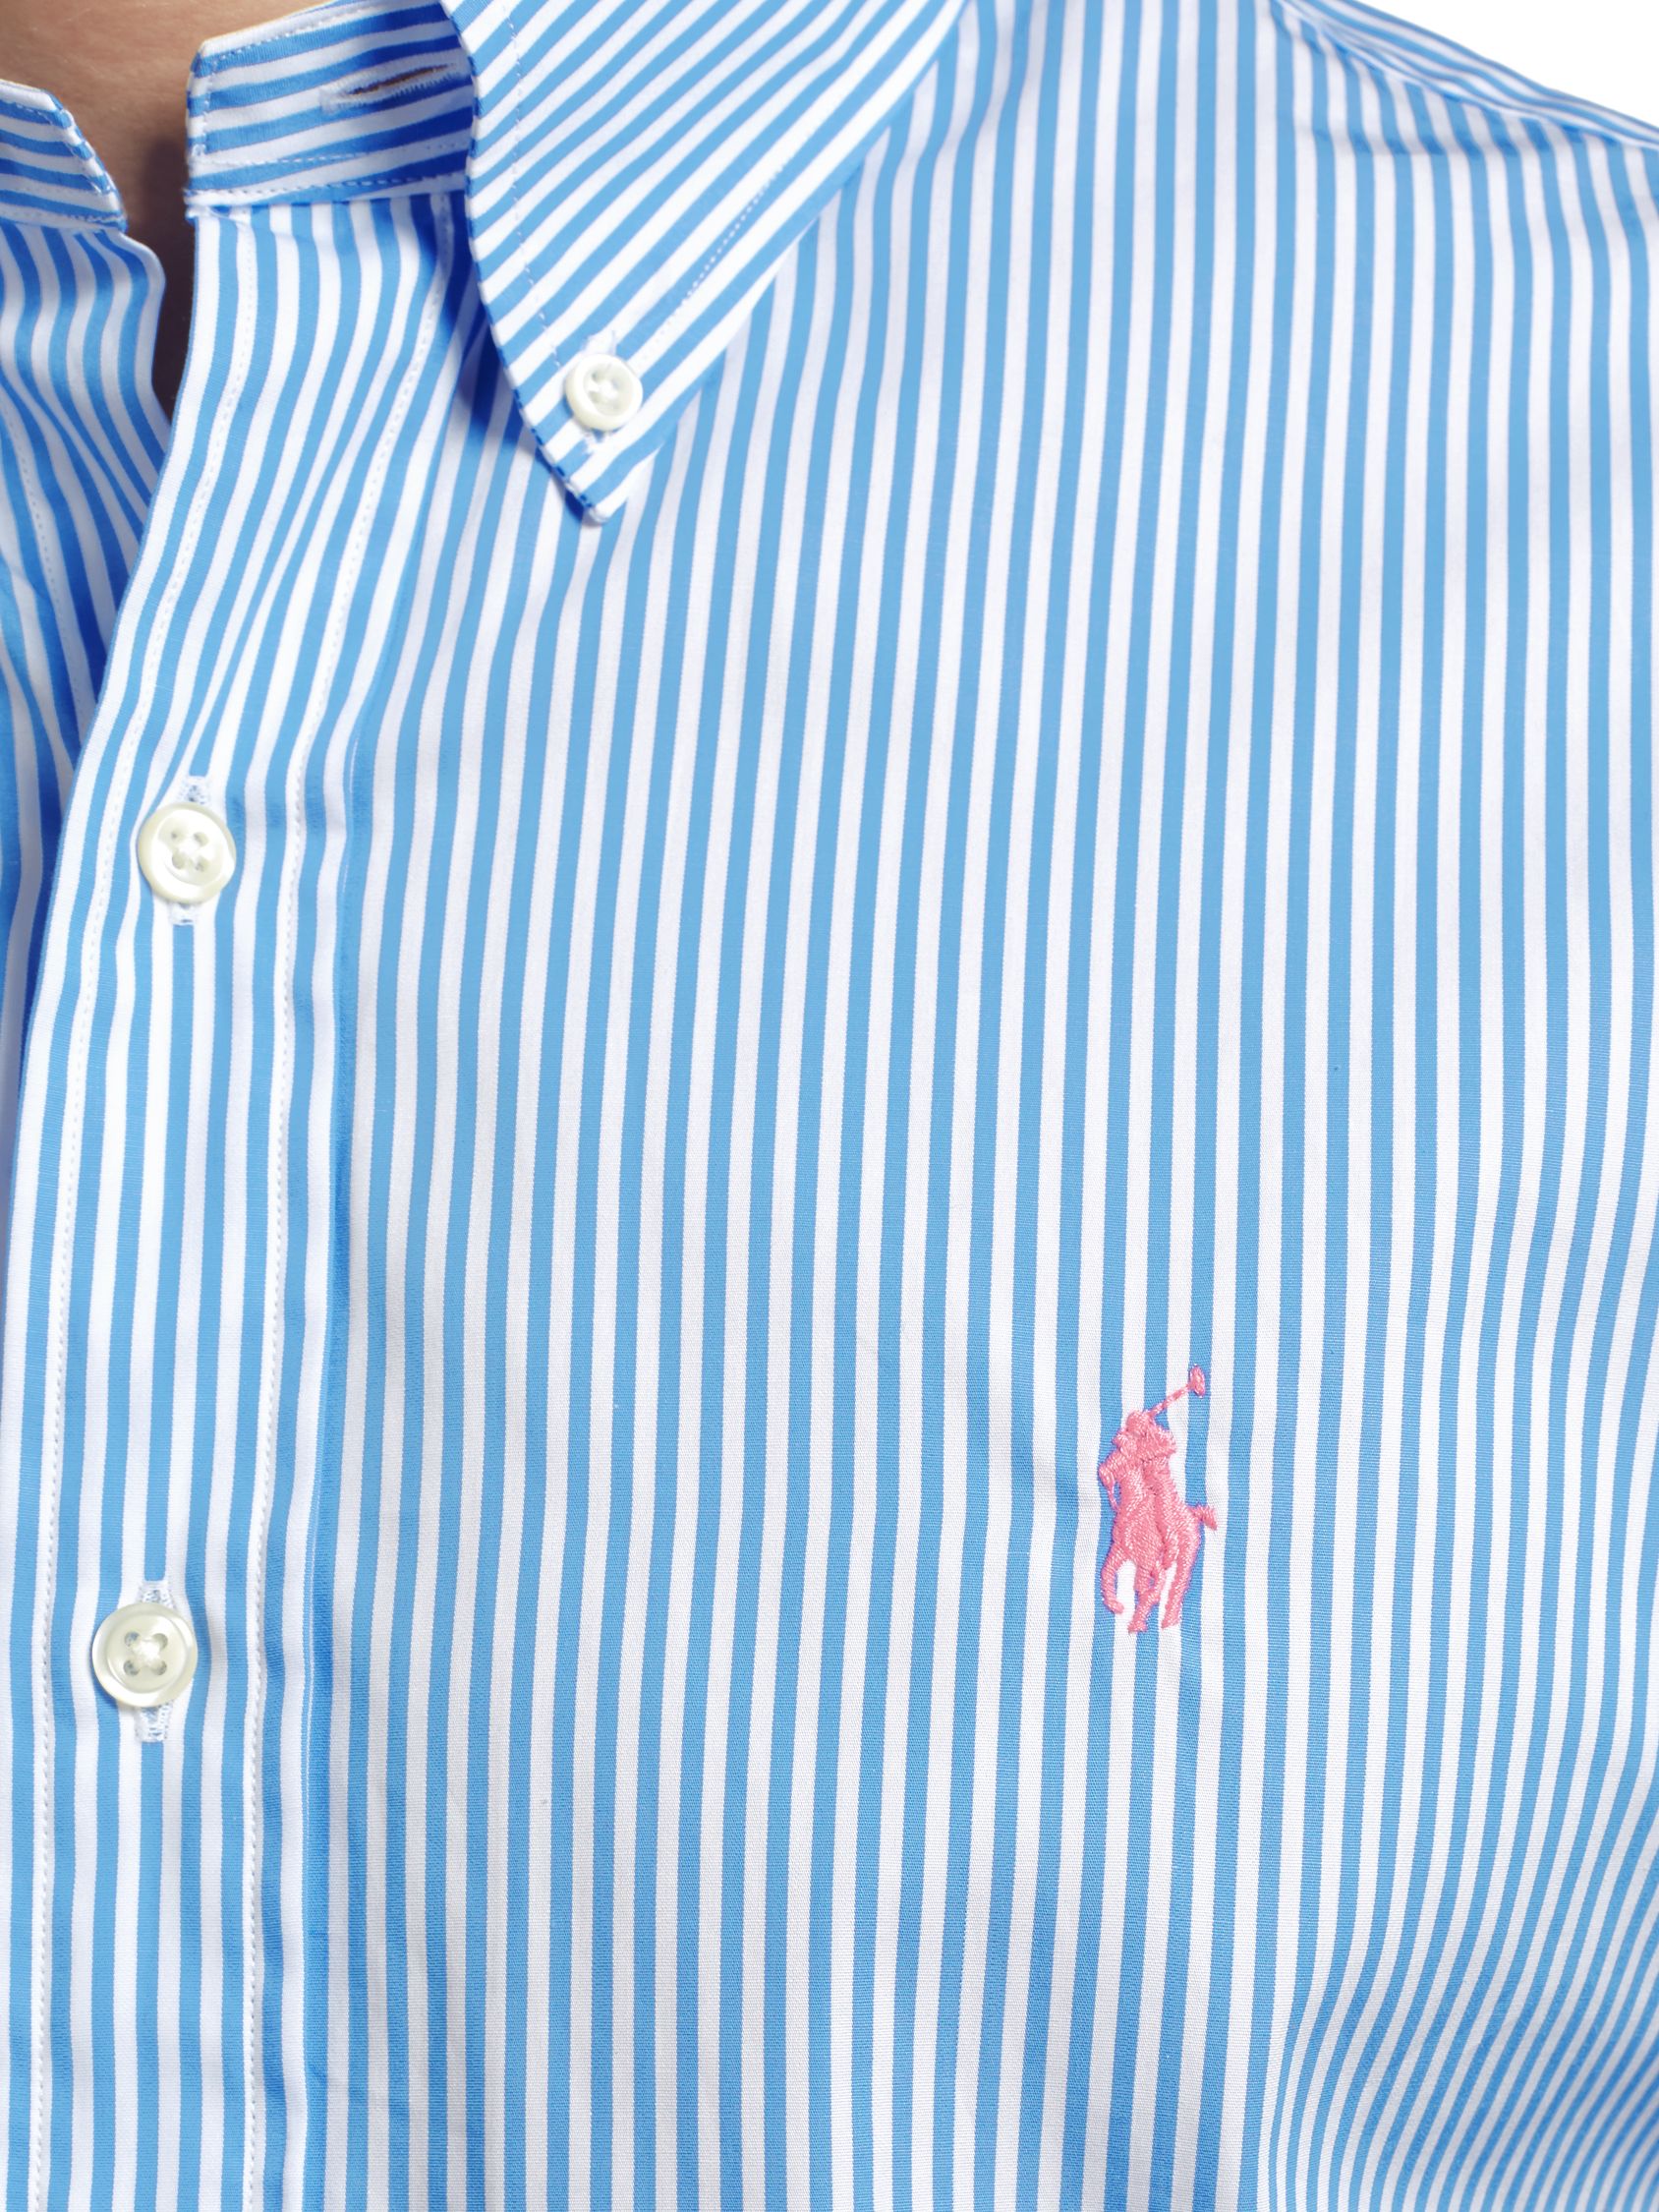 ralph lauren striped poplin shirt